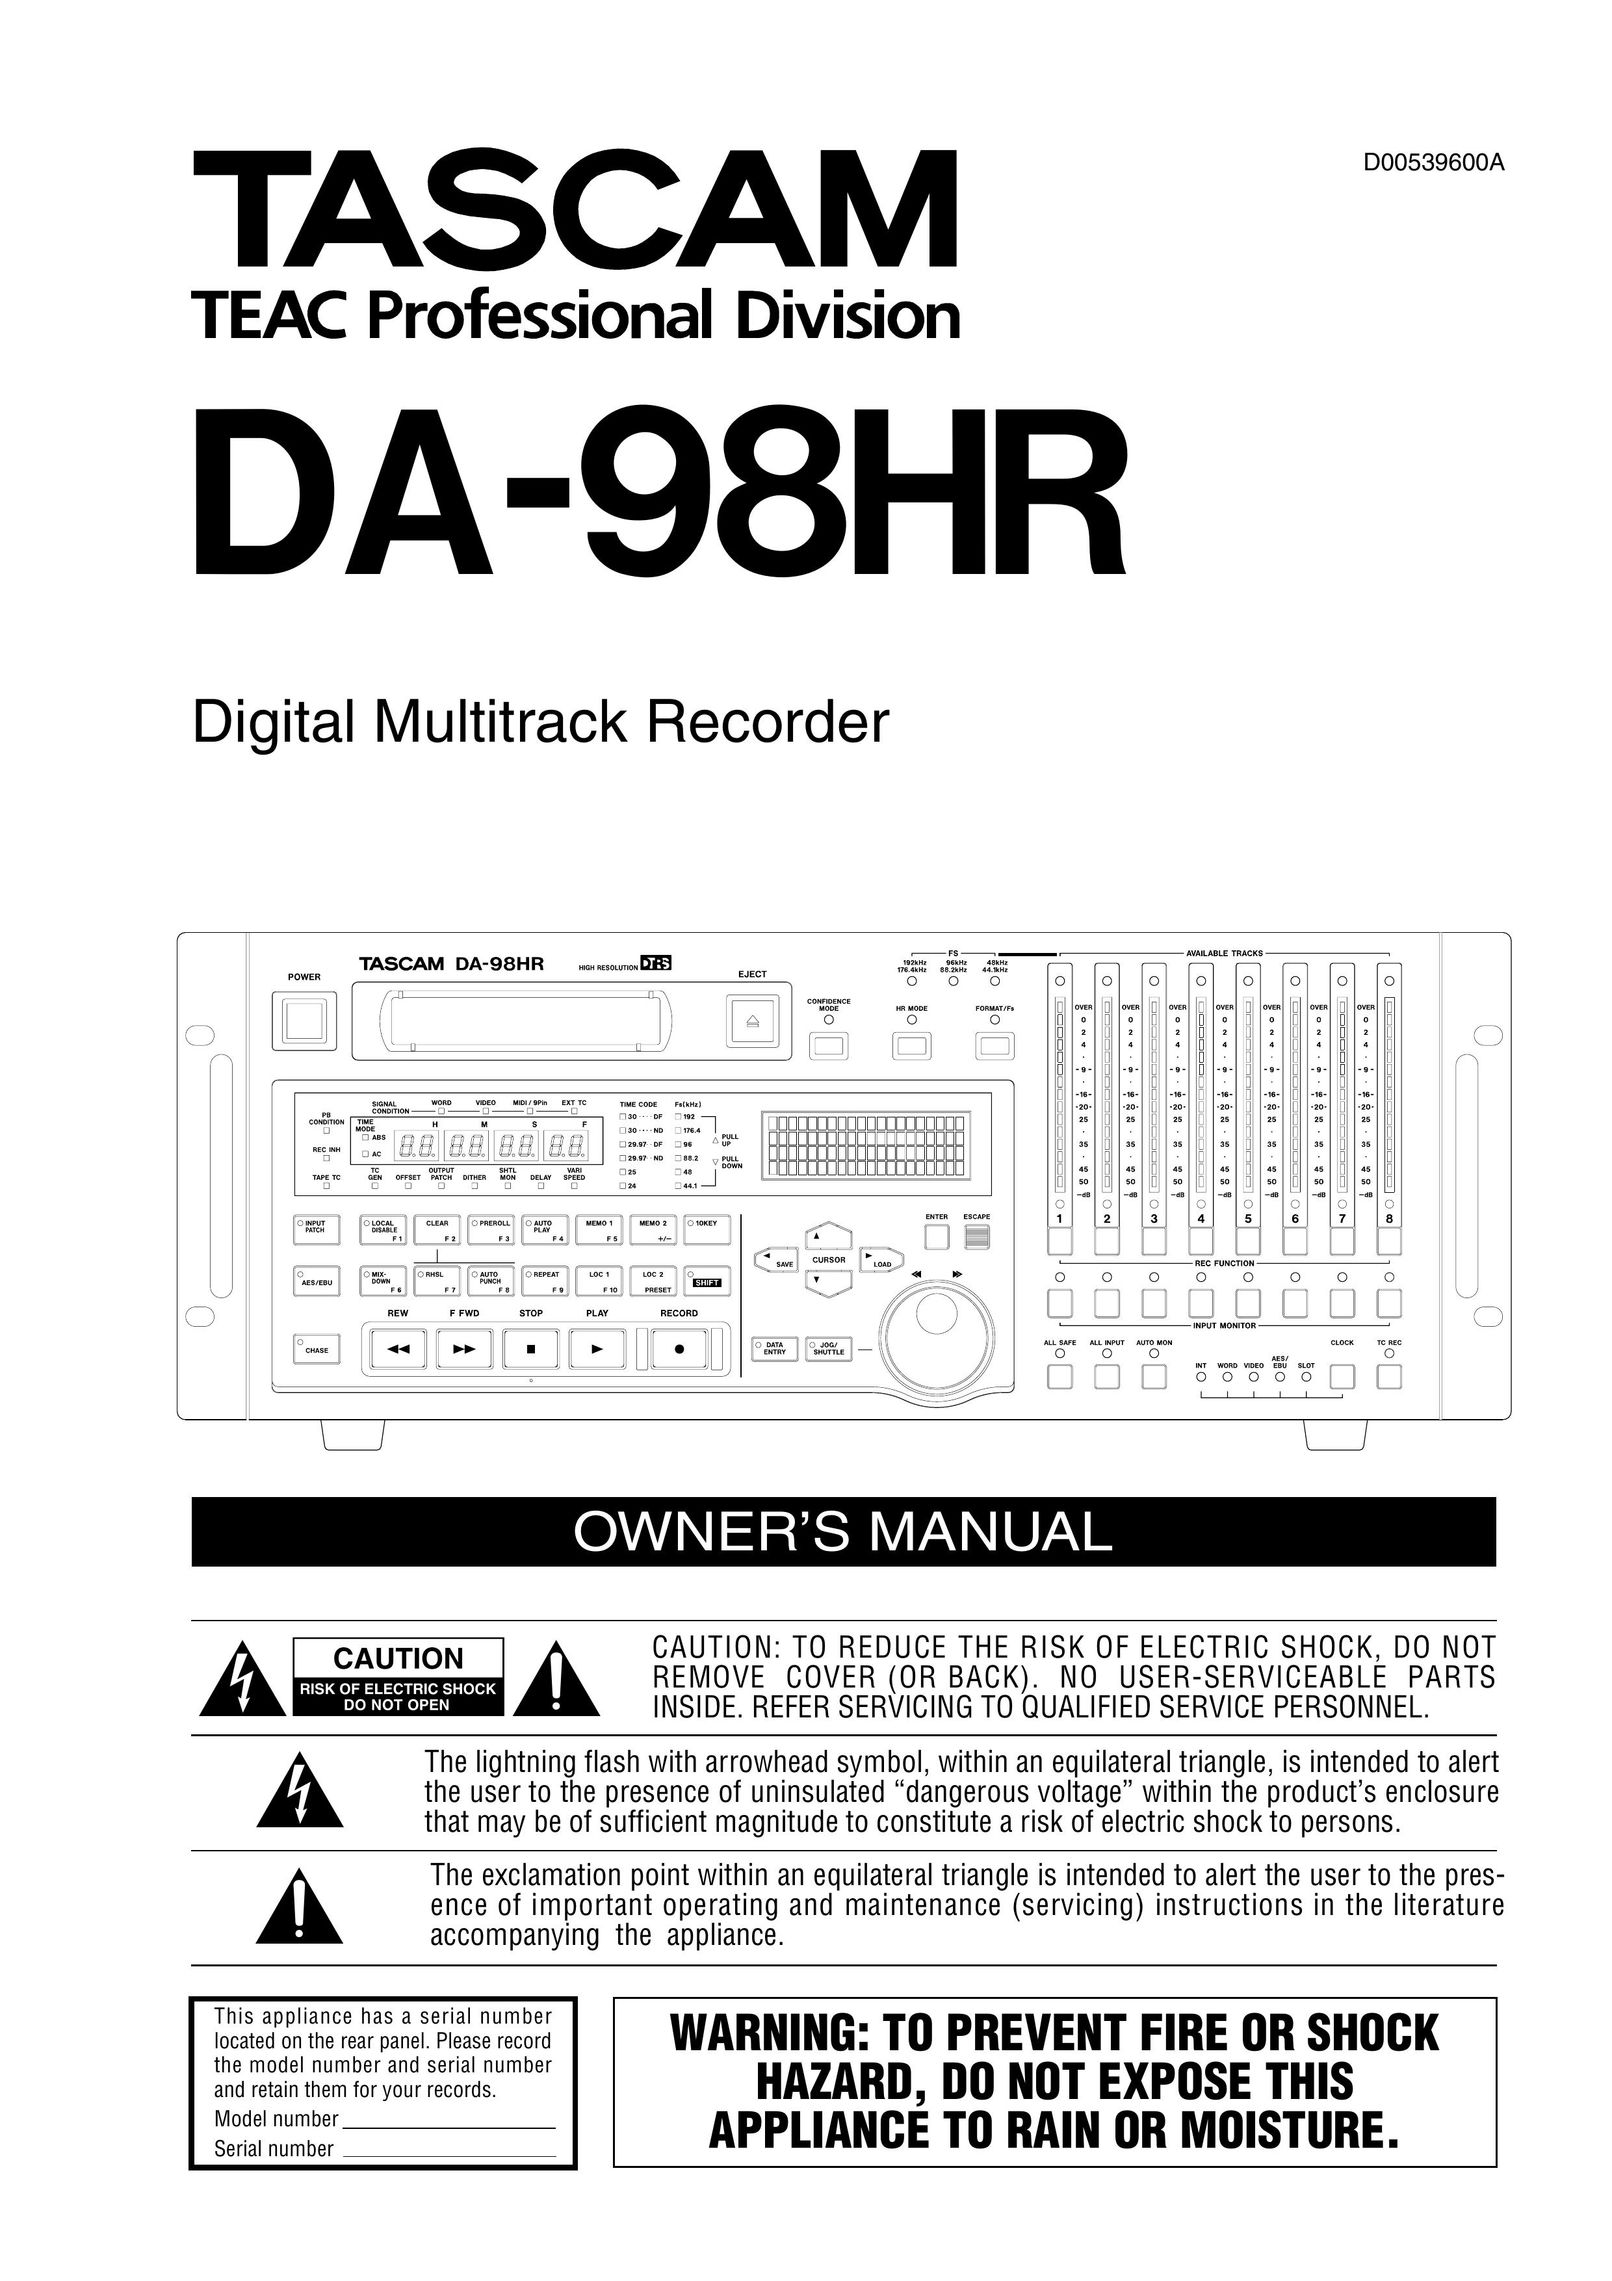 Tascam DA-98HR Car Stereo System User Manual